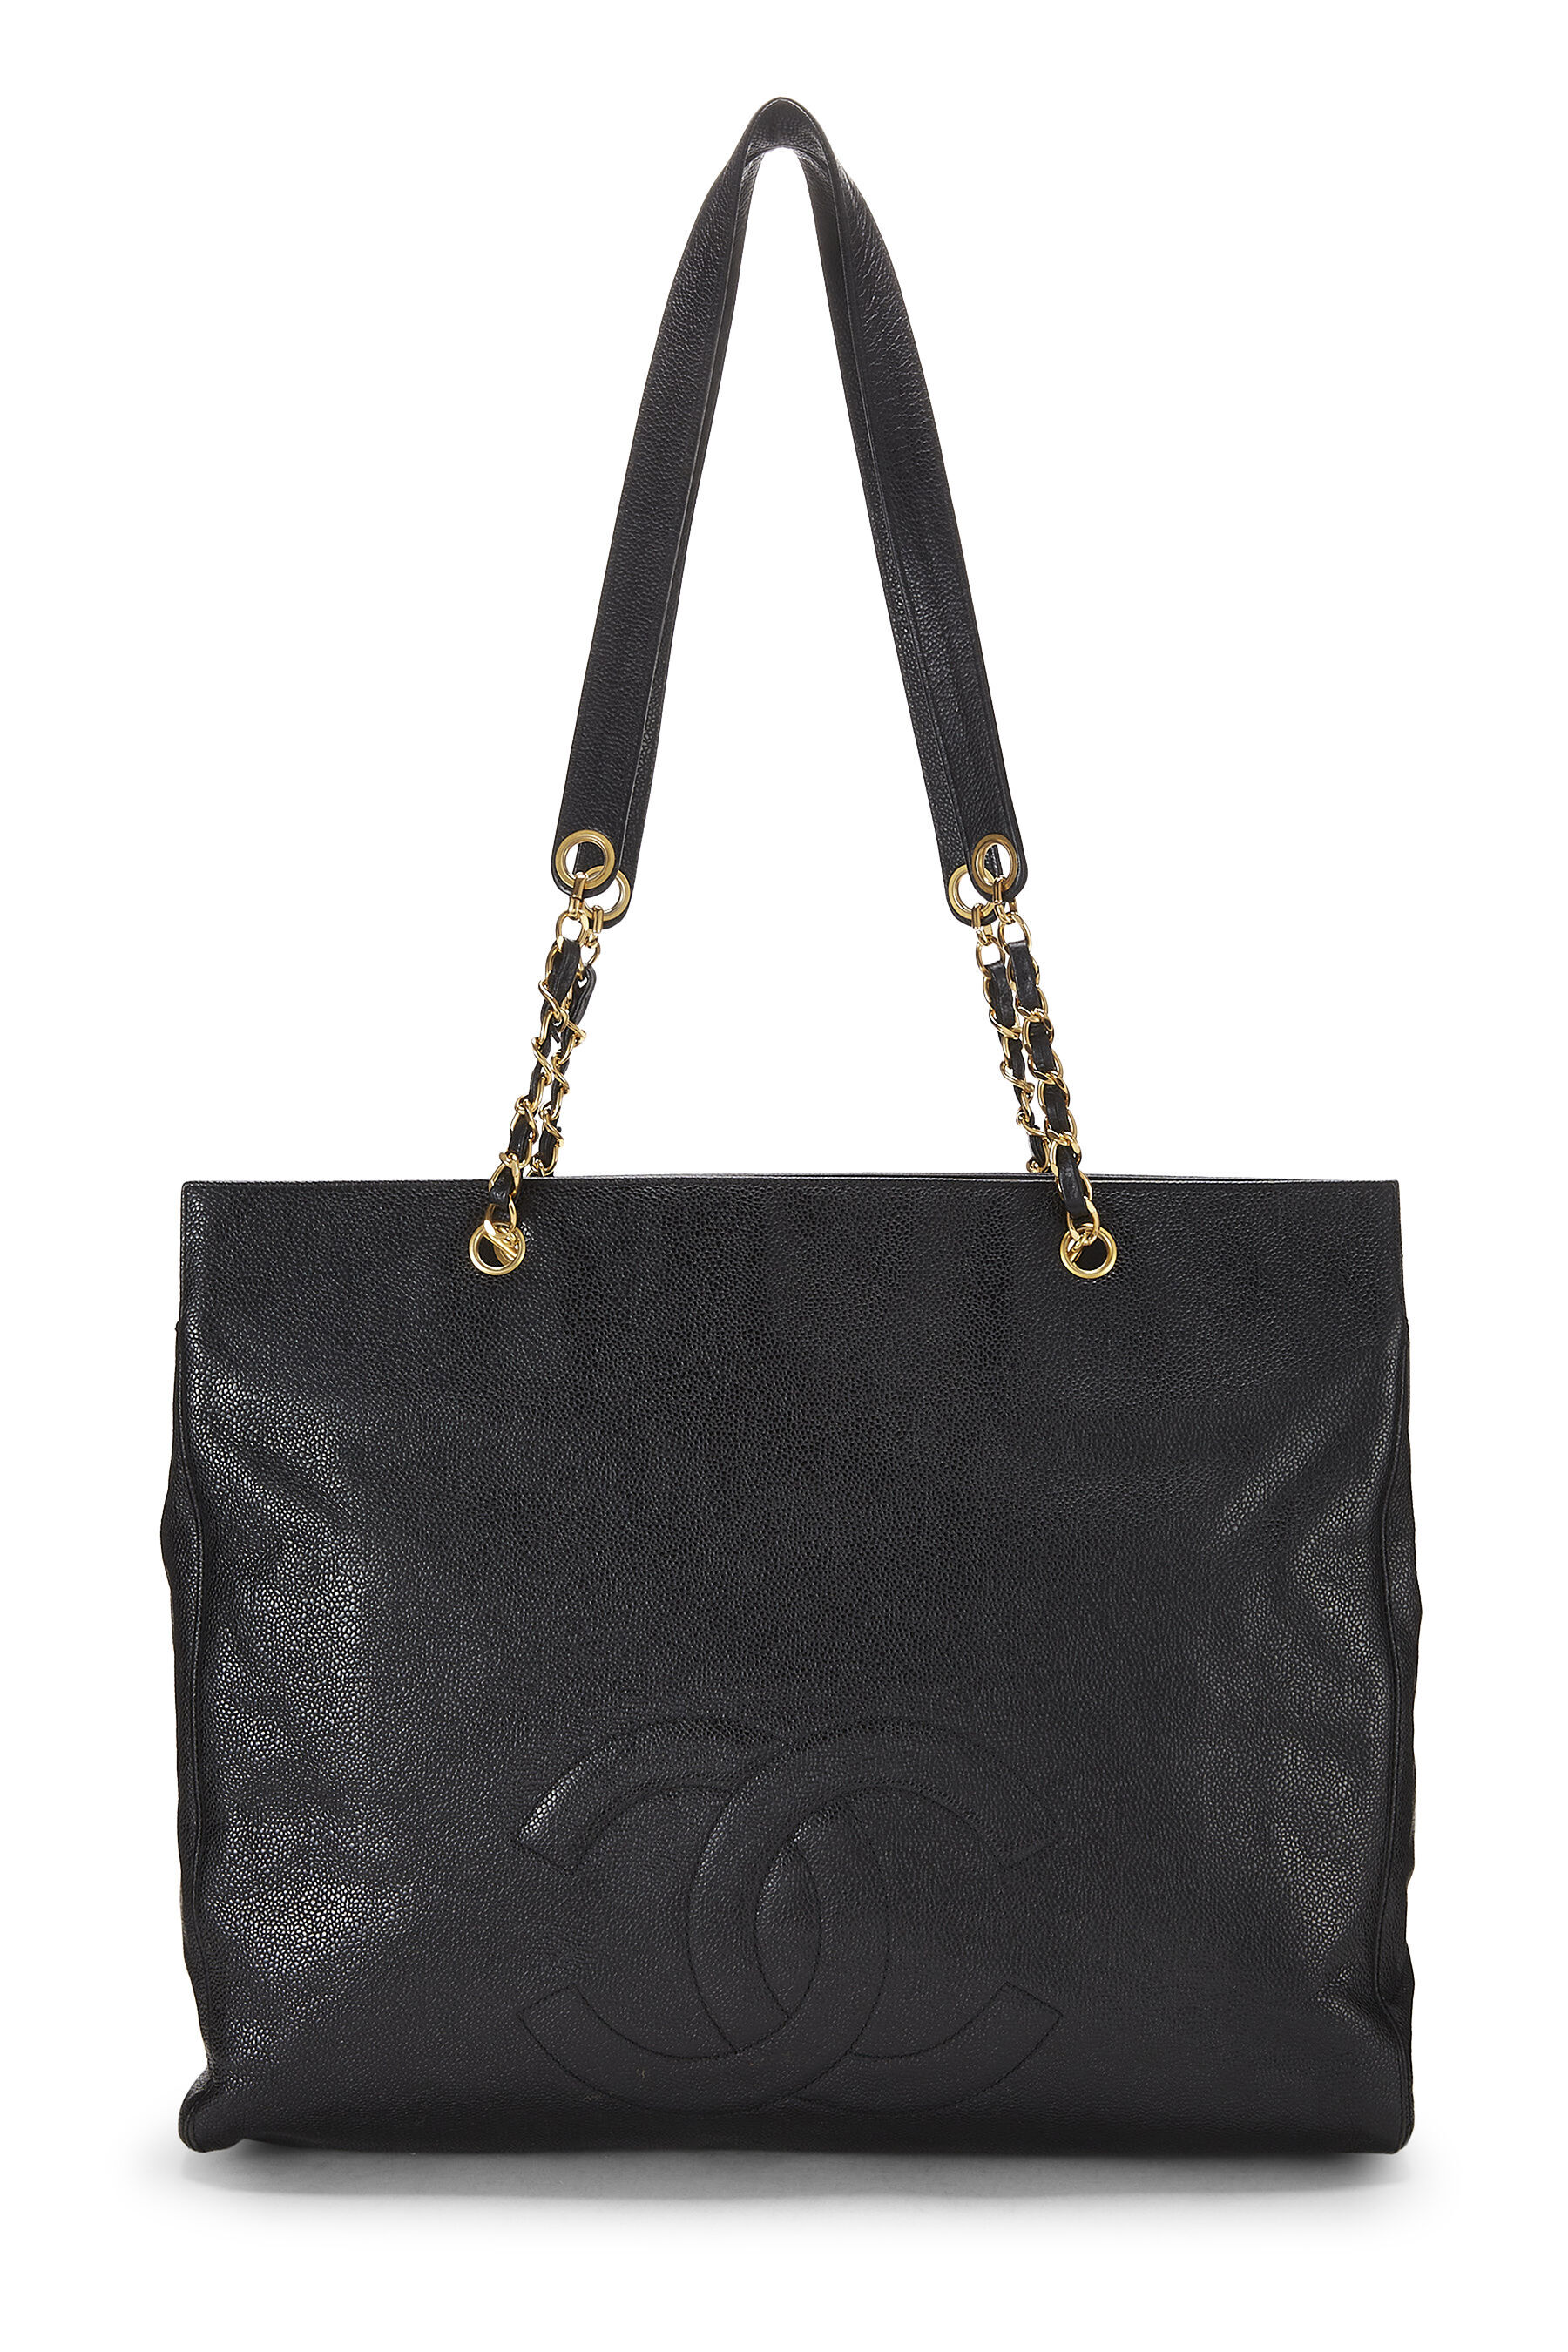 Buy CHANEL @ Set Of 3 Leather Handbag/Slingbag/Shoulder Bag/Wallet For  Women (Red),CHB-002 at Amazon.in